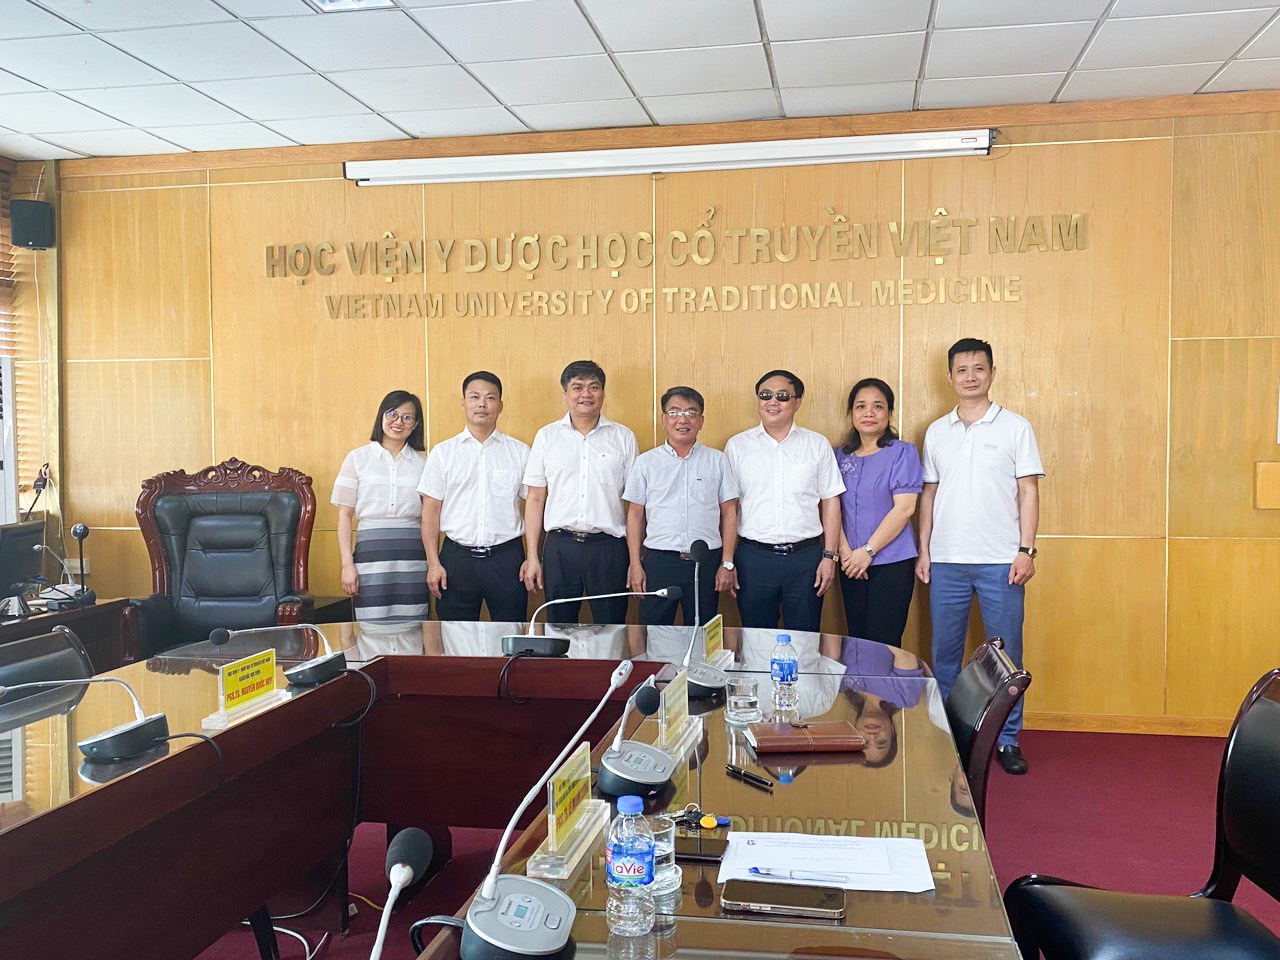 Thúc đẩy hợp tác đào tạo và phát triển nghề Xoa bóp bấm huyệt giữa Trung tâm Đào tạo cán bộ PHCN cho người mù và Học viện Y Dược học cổ truyền Việt Nam